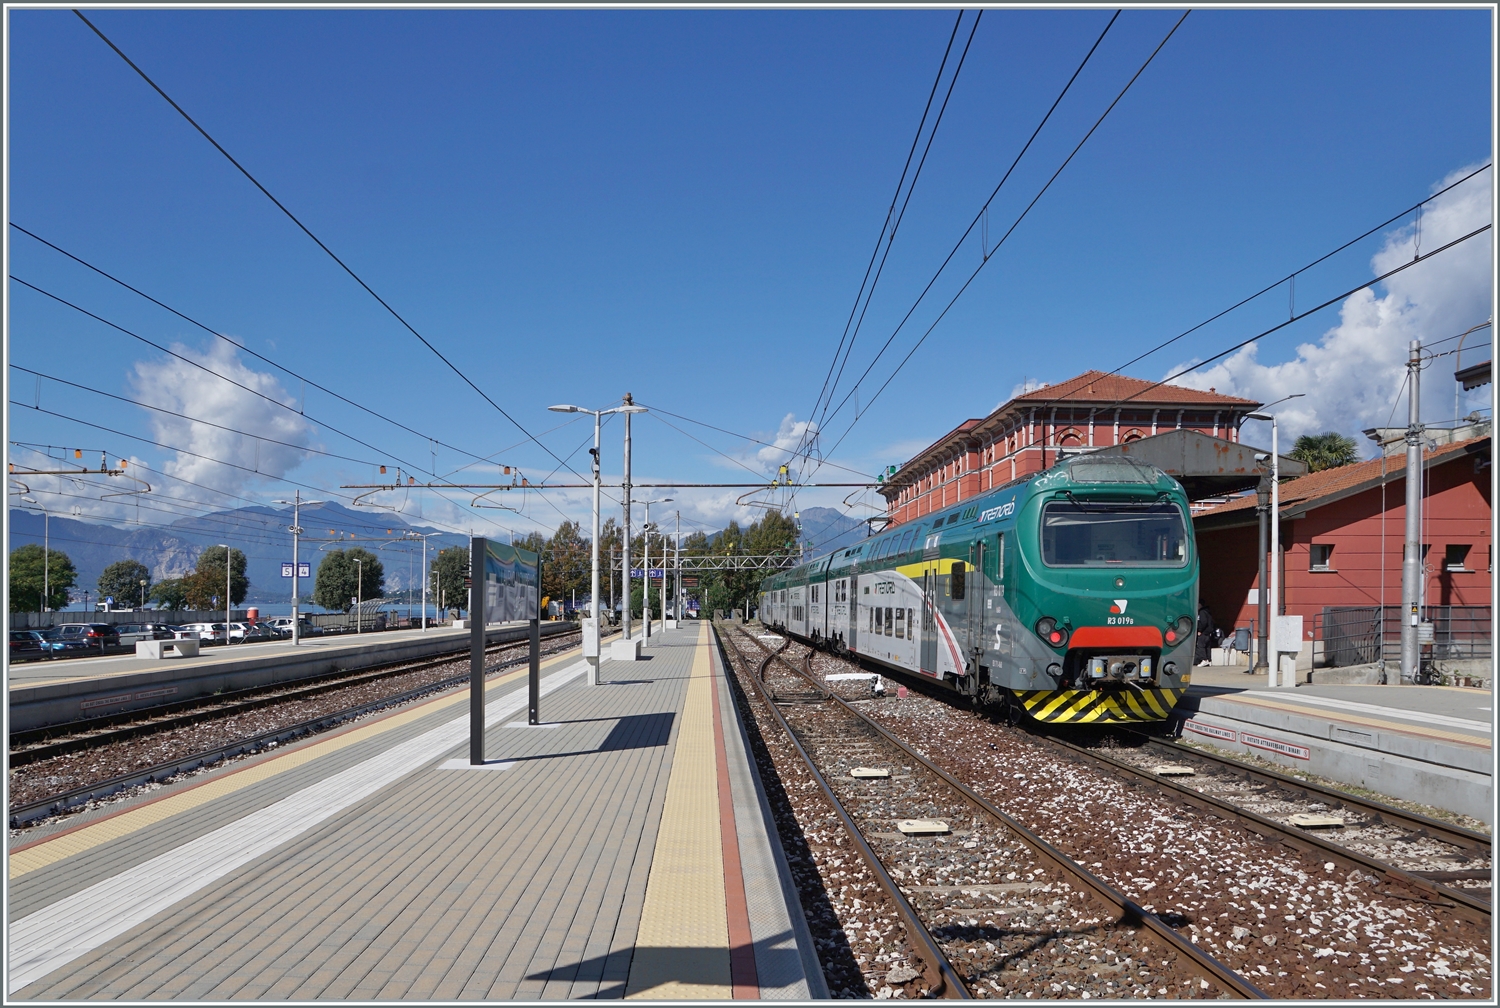 Endstation Lago Maggiore: der Trenord ALe 711 068 (94 83 4 711 068-6 I-TN) ist als Regio von Milano Cadorna in Laveno Mombello Lago angekommen.
Links im Bild gleitet der Blick über den See bis ans andere Ufer, wo sich unter anderem der schöne Ort Stresa befindet.

27. September 2022